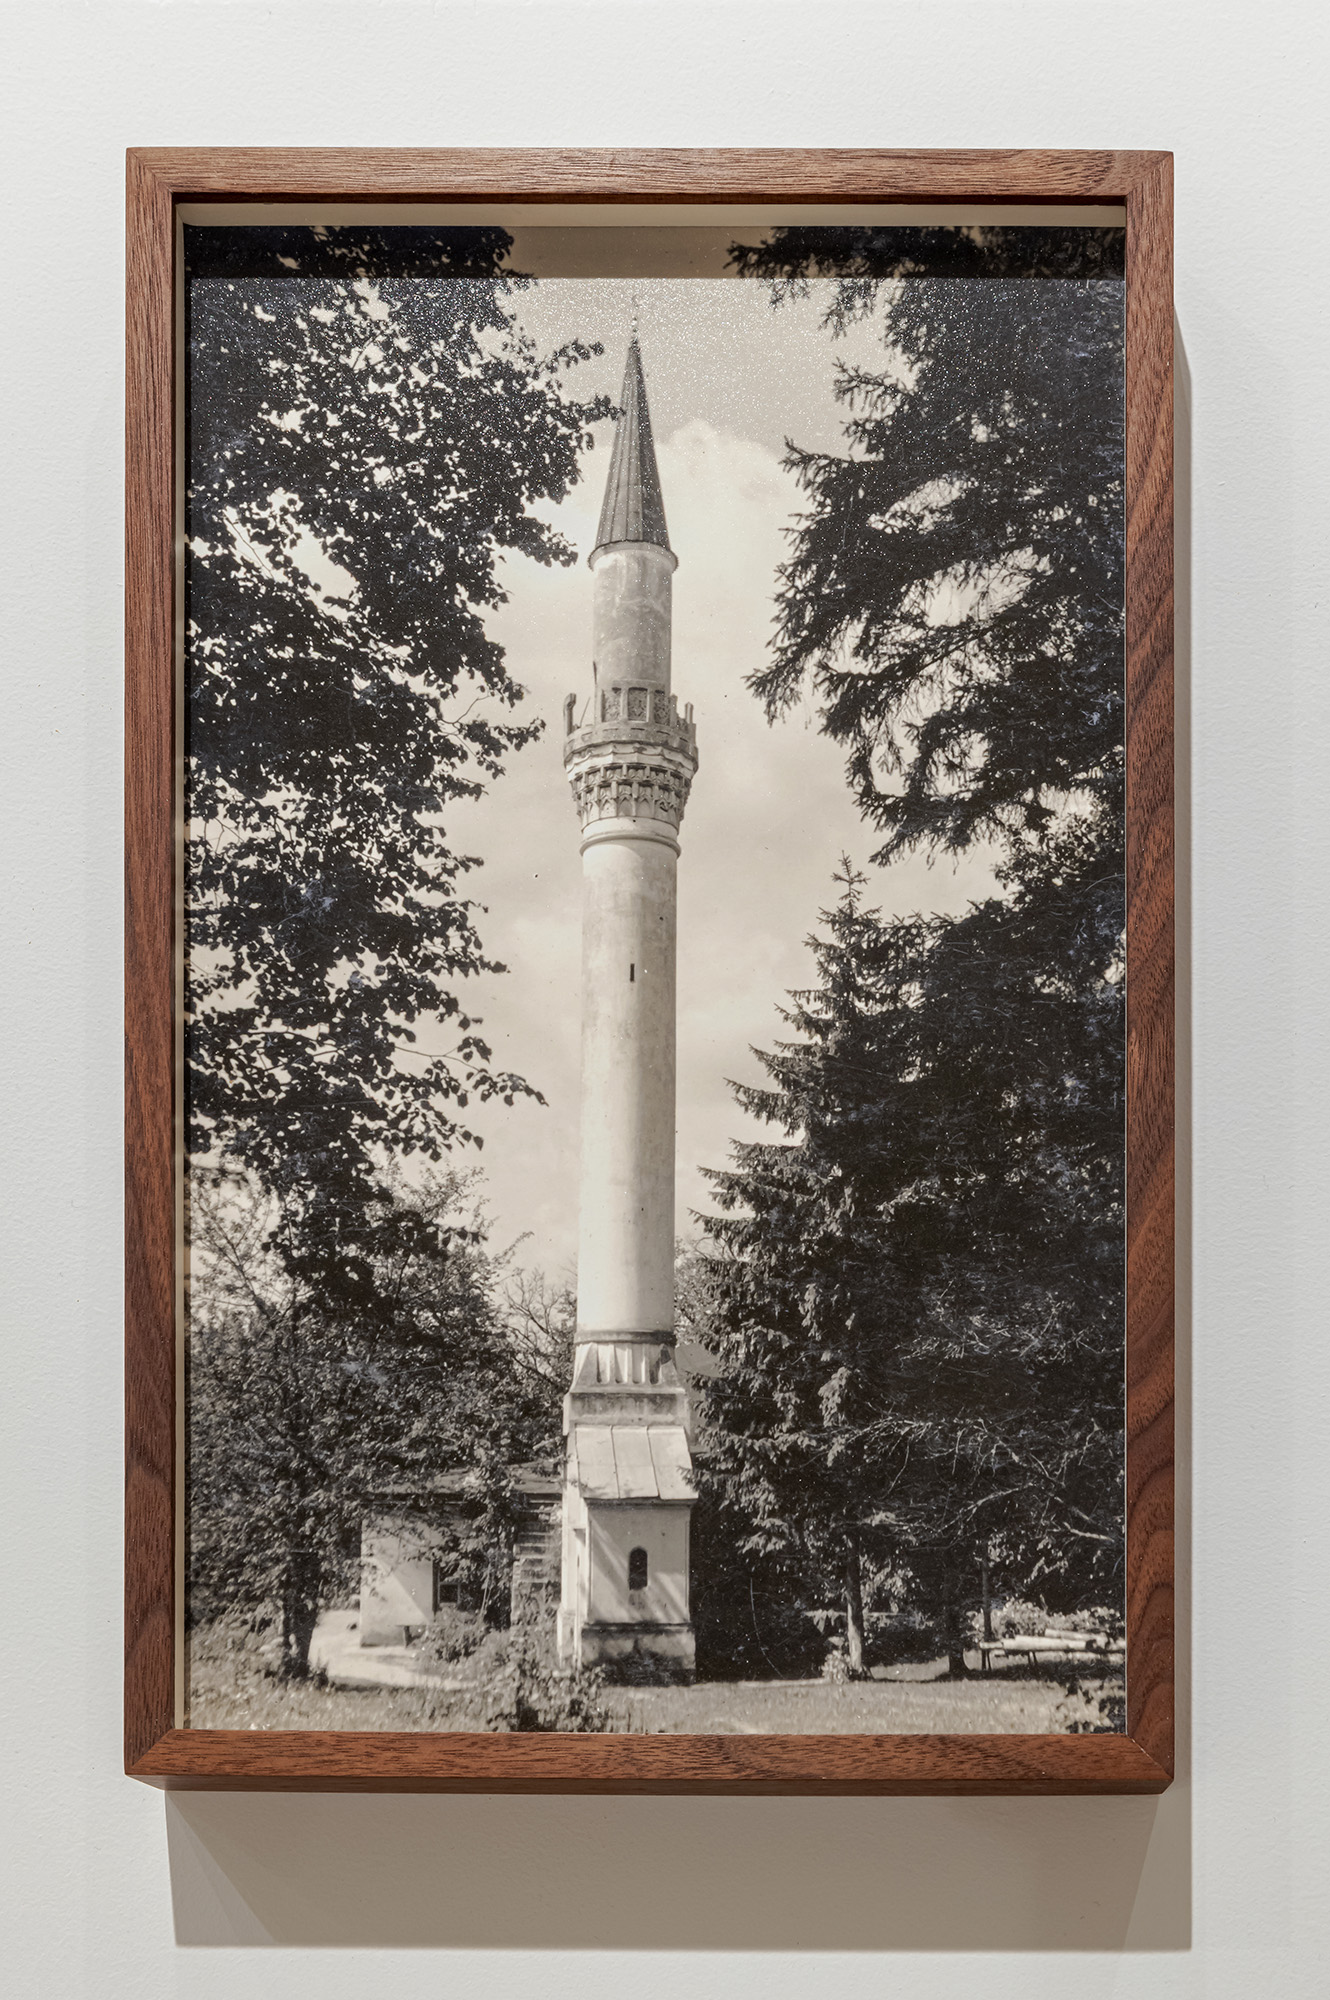 Erdem Taşdelen - A Minaret for the General's Wife (2020)